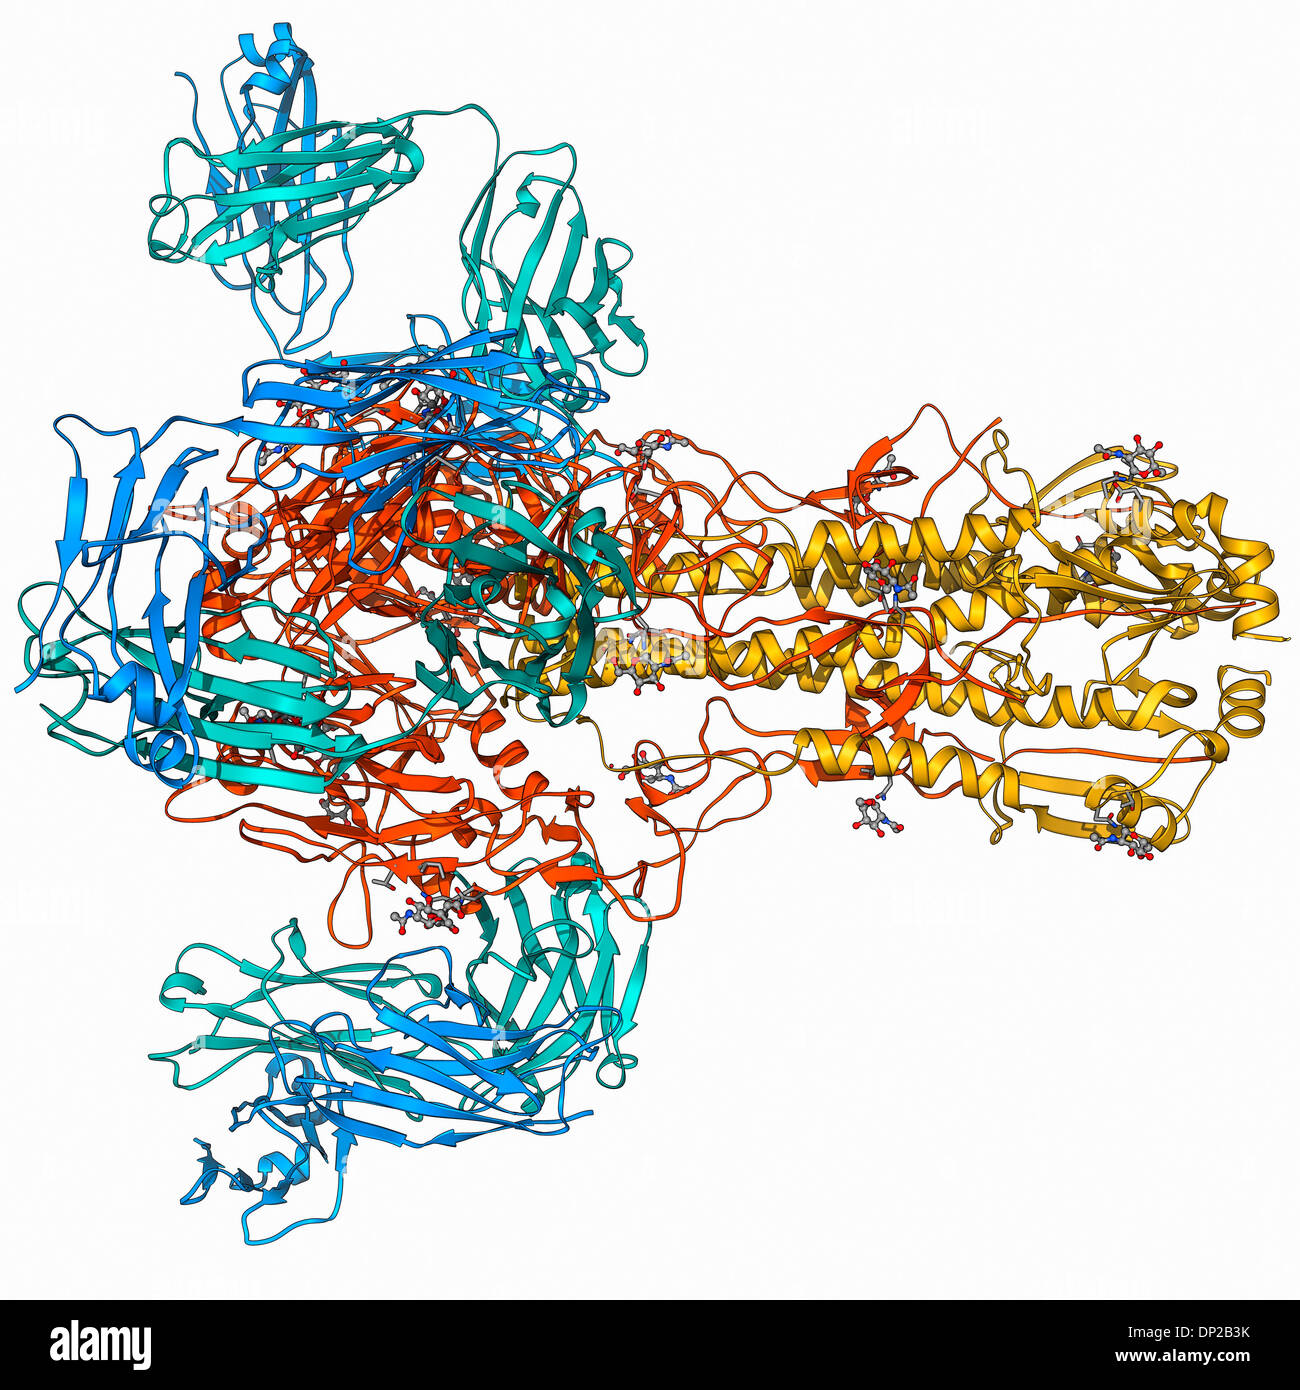 Virale Oberfläche Protein Hämagglutinin Stockfoto